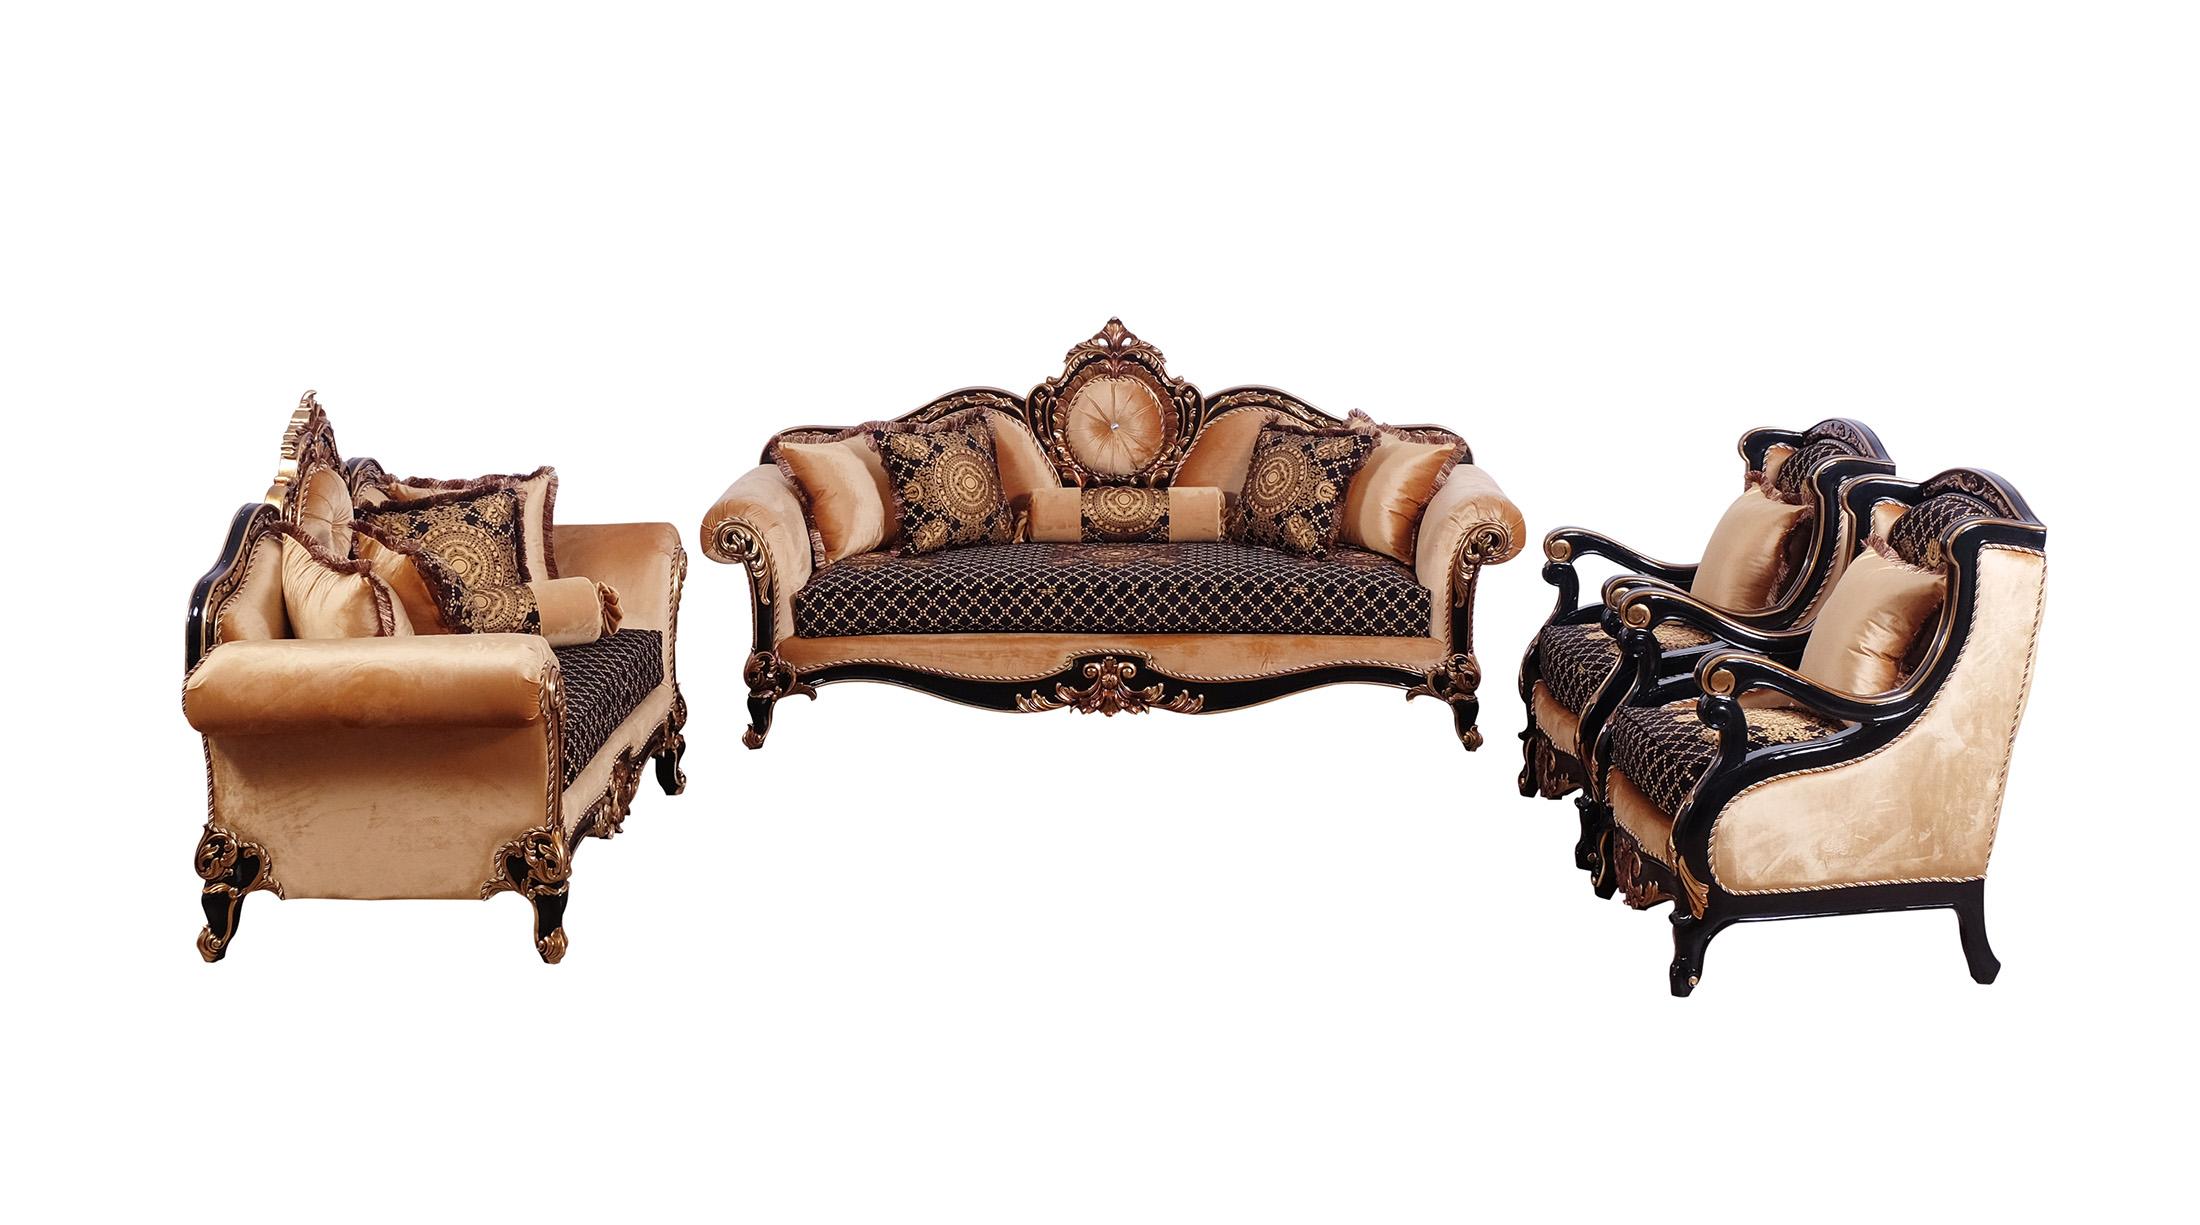 Classic, Traditional Sofa Set RAFFAELLO 41024-Set-4 in Antique, Silver, Gold, Black Fabric